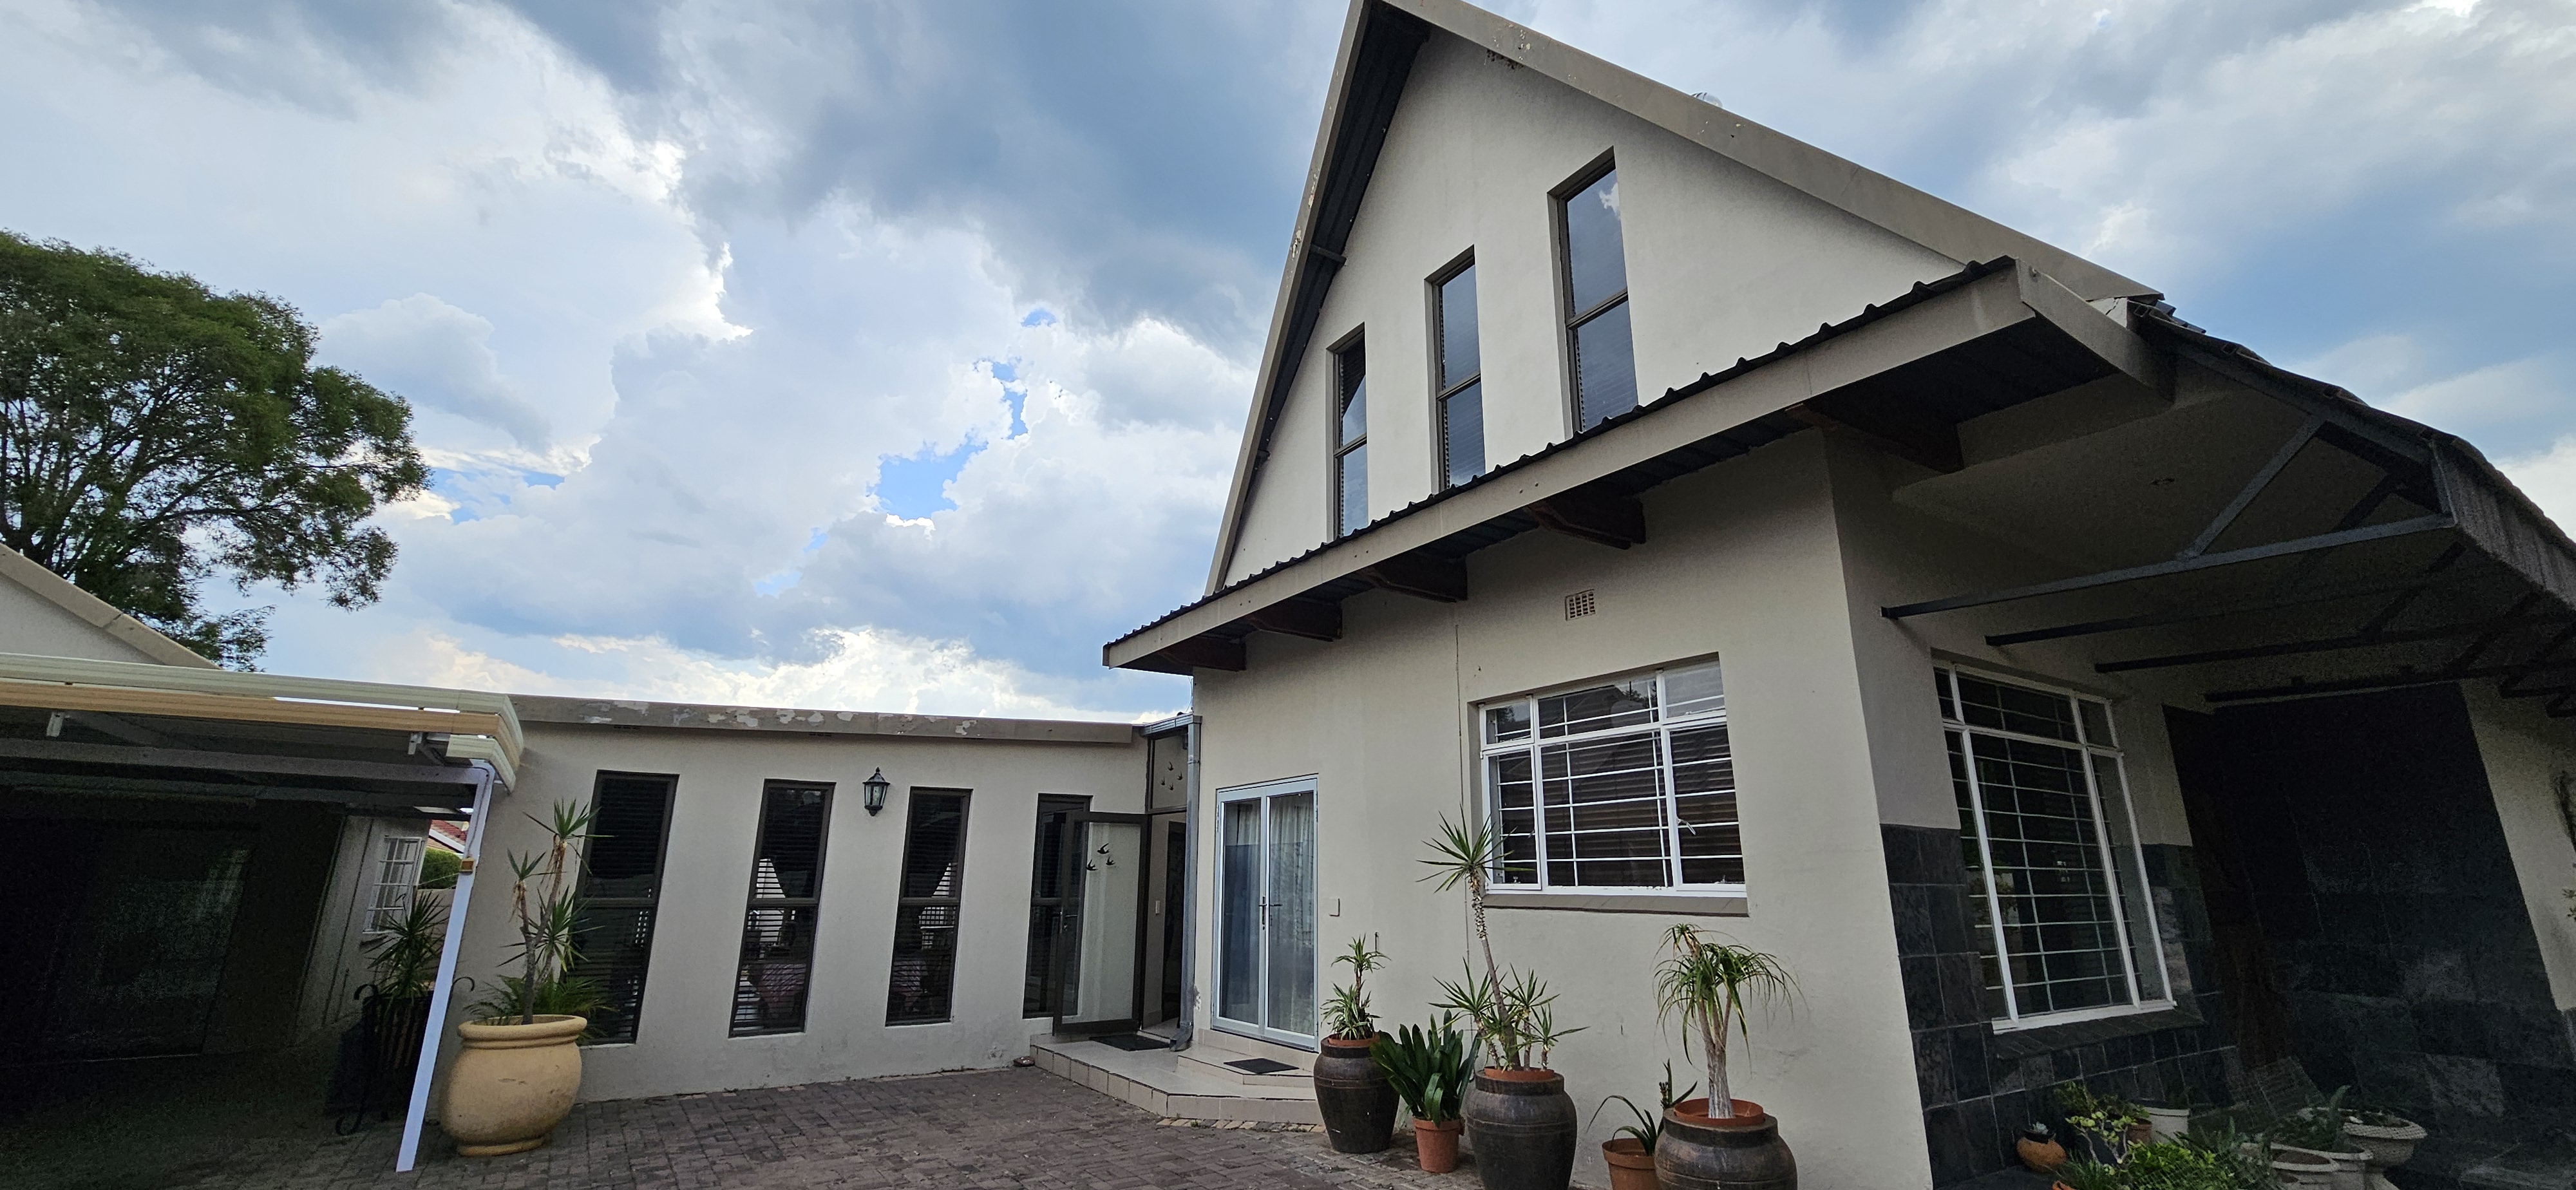 4 Bedroom Property for Sale in Bela Bela Limpopo